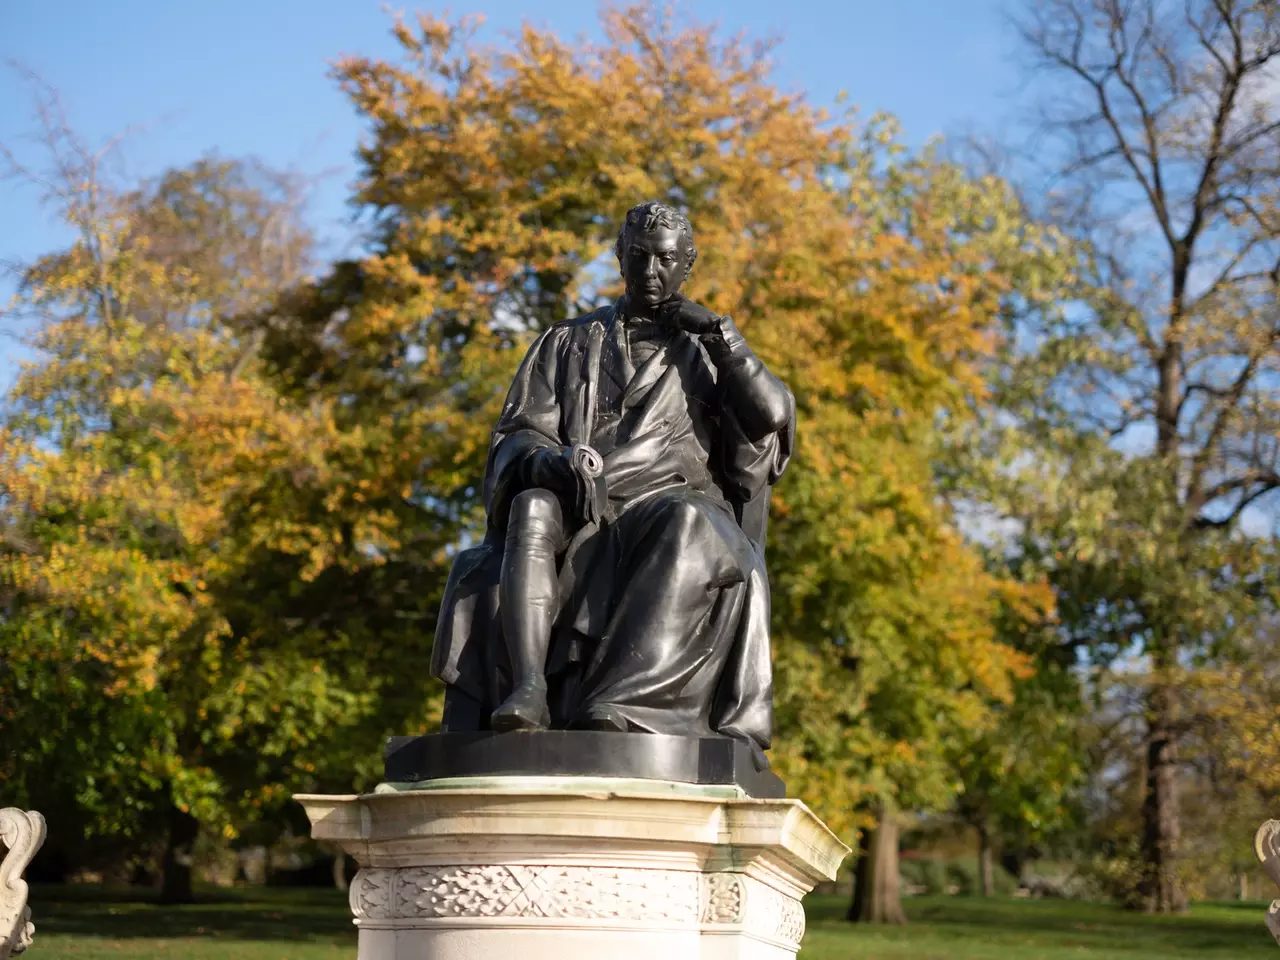 Jenner statue in Kensington Gardens